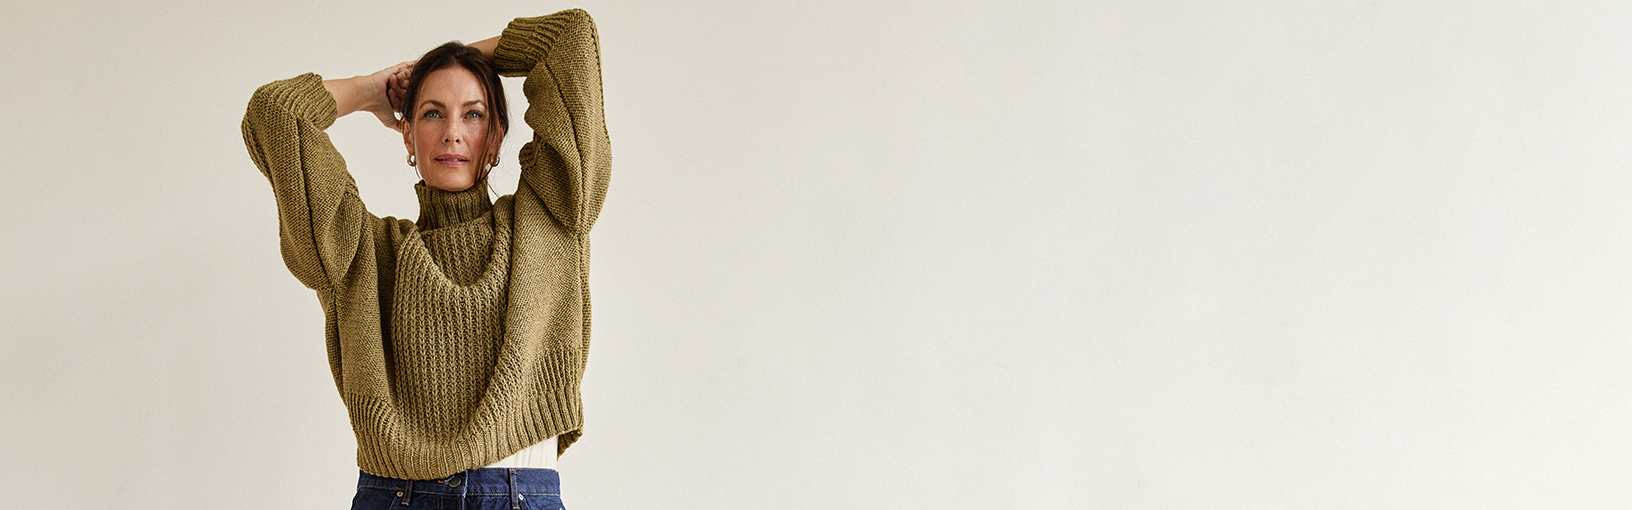 Высококачественная пряжа для вязки и свойлачивание Пряжа Lana Grossa | Lace